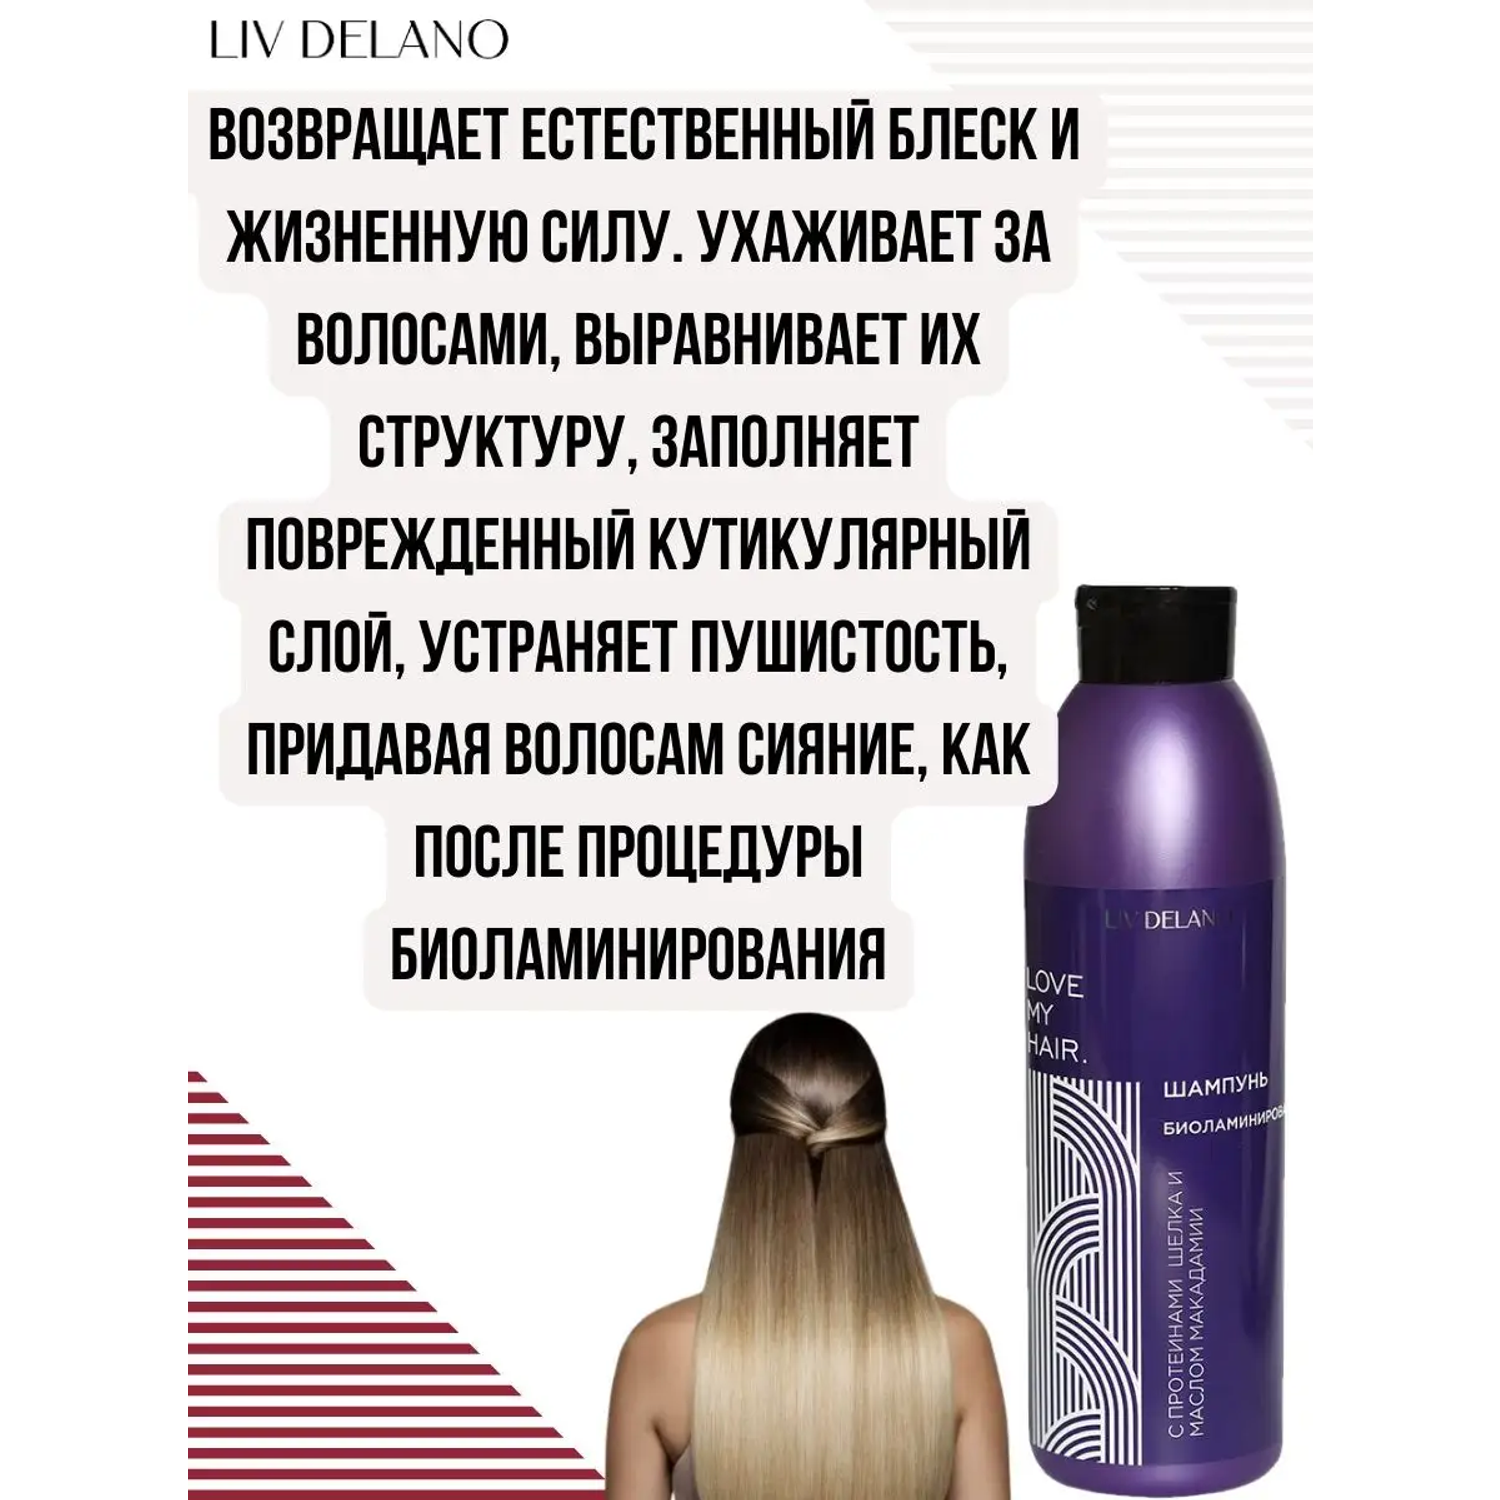 Шампунь для волос LIV DELANO Love my hair Биоламинирование С протеинами шелка и маслом макадамии 1000мл - фото 4